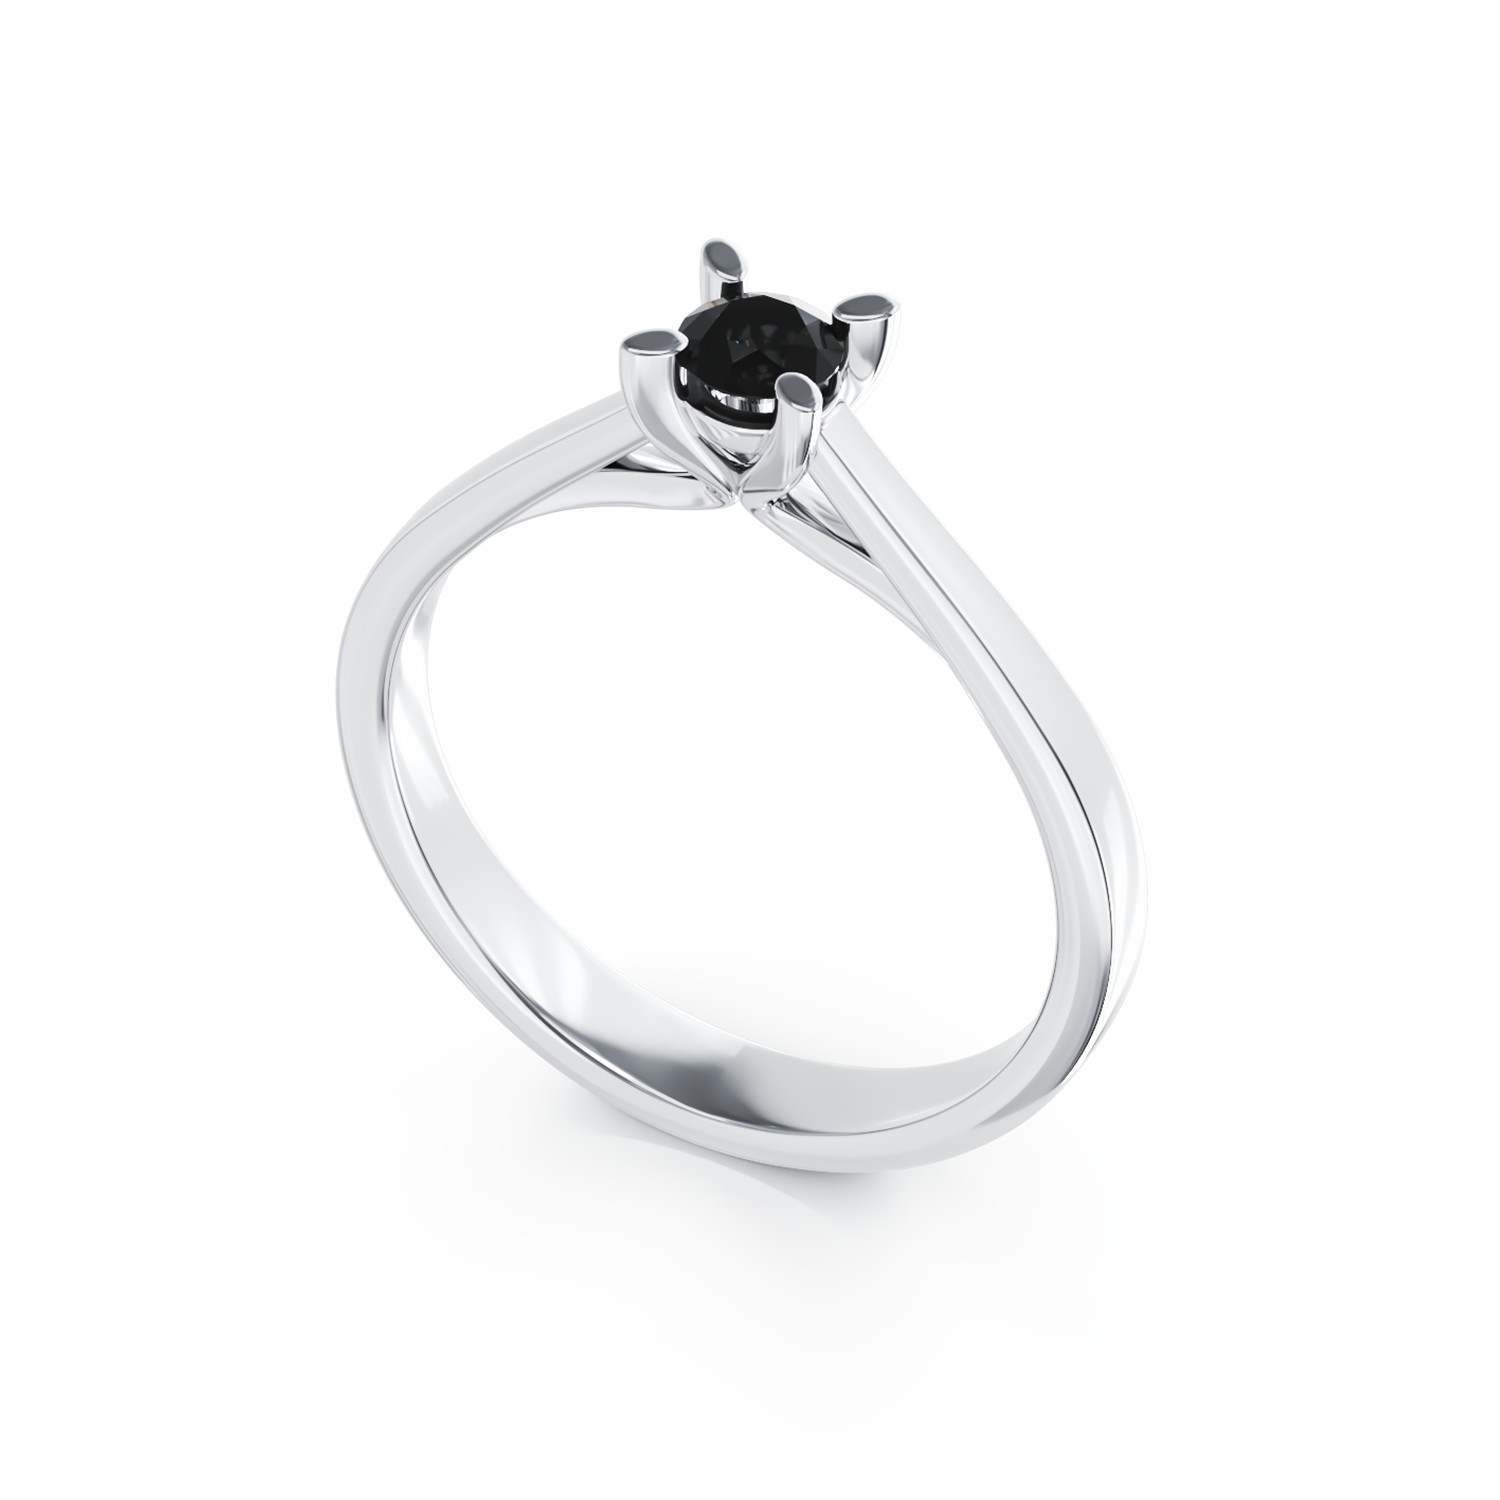 Eljegyzési gyűrű 18K-os fehér aranyból 0,2ct fekete gyémánttal. Gramm: 2,39